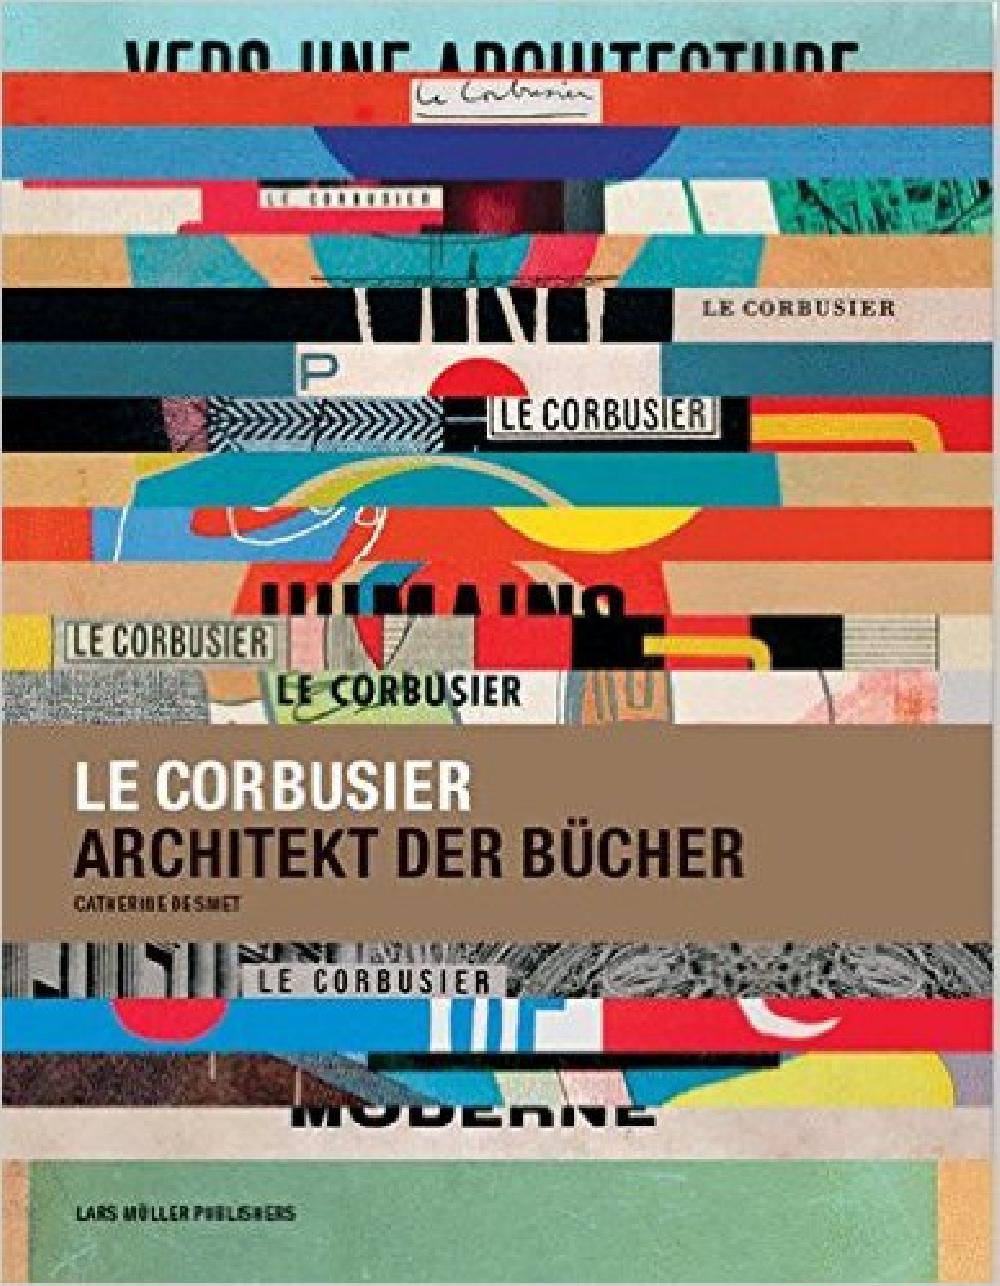 Le Corbusier Architekt der Bucher